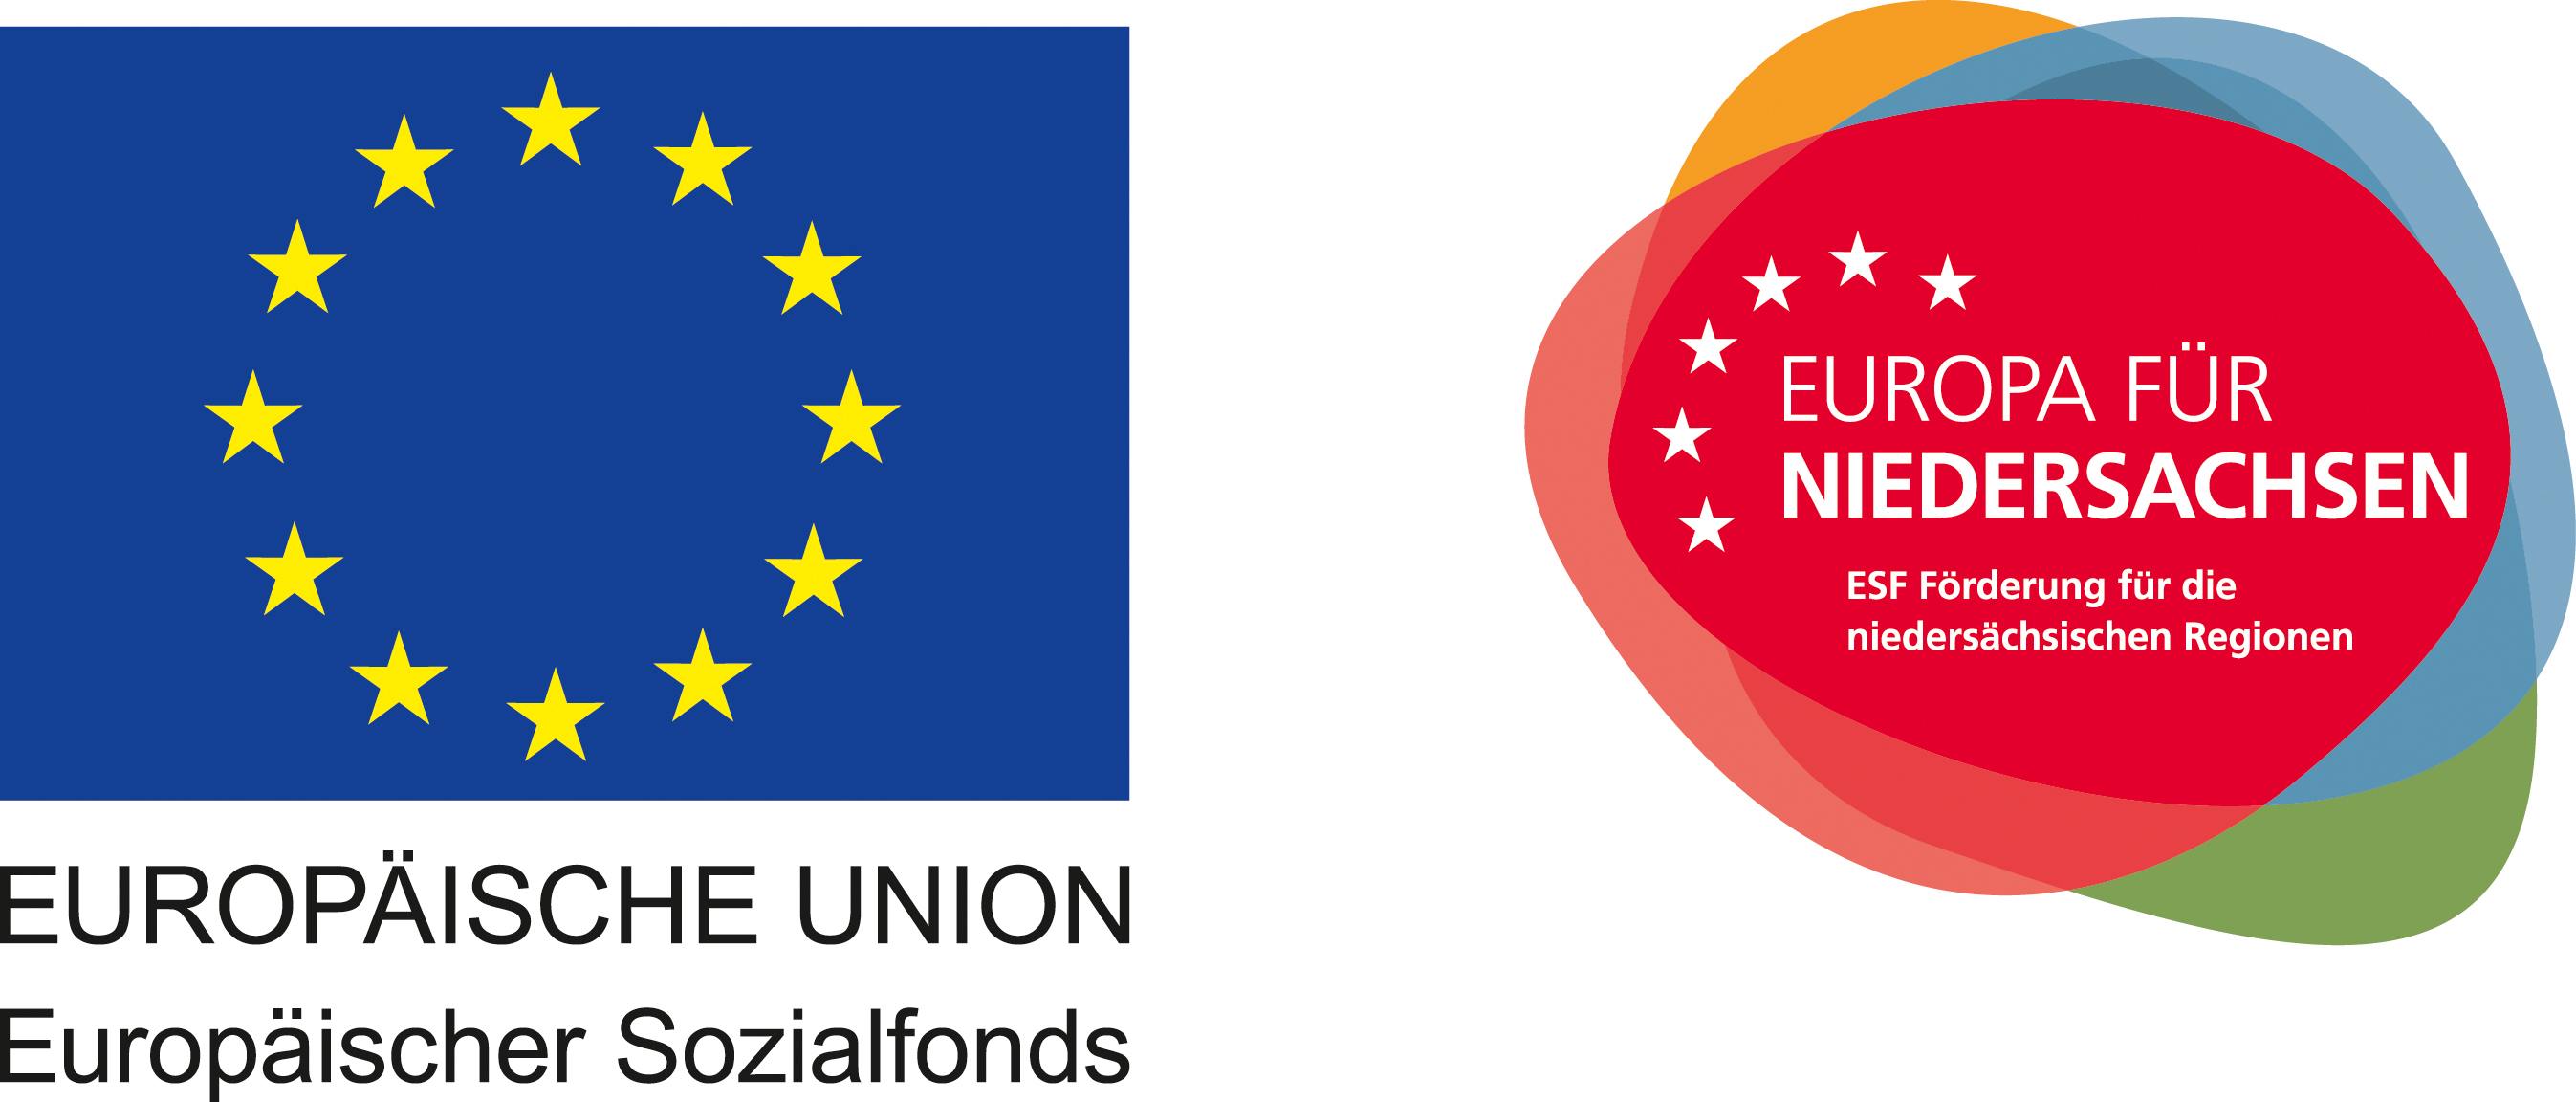 EU-Förderung - Europa für Niedersachsen